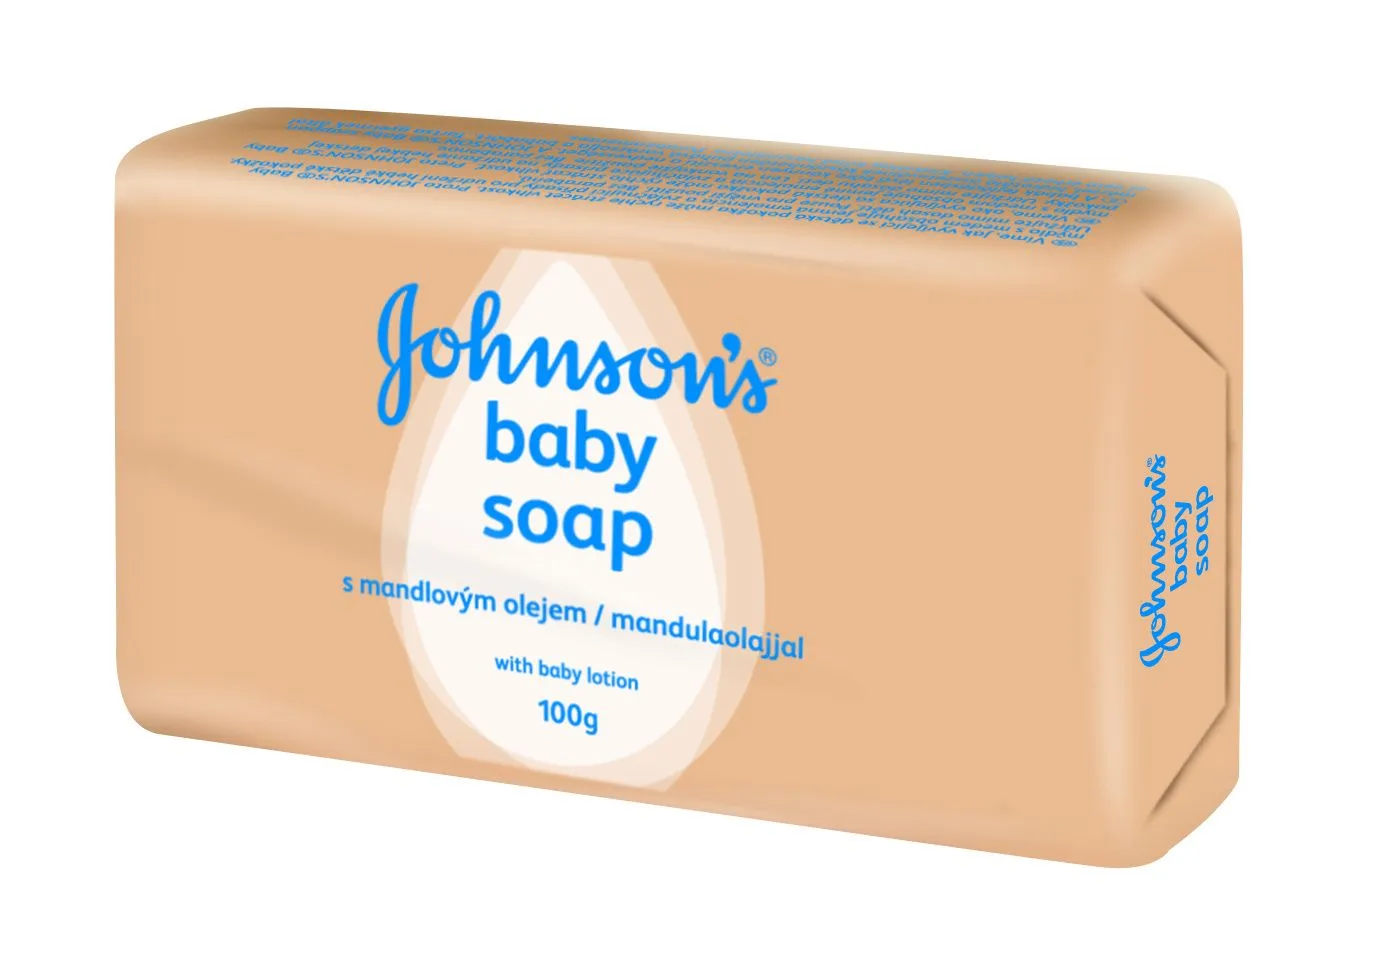 JOHNSON’S® Baby mýdlo s mandlovým olejem 100g